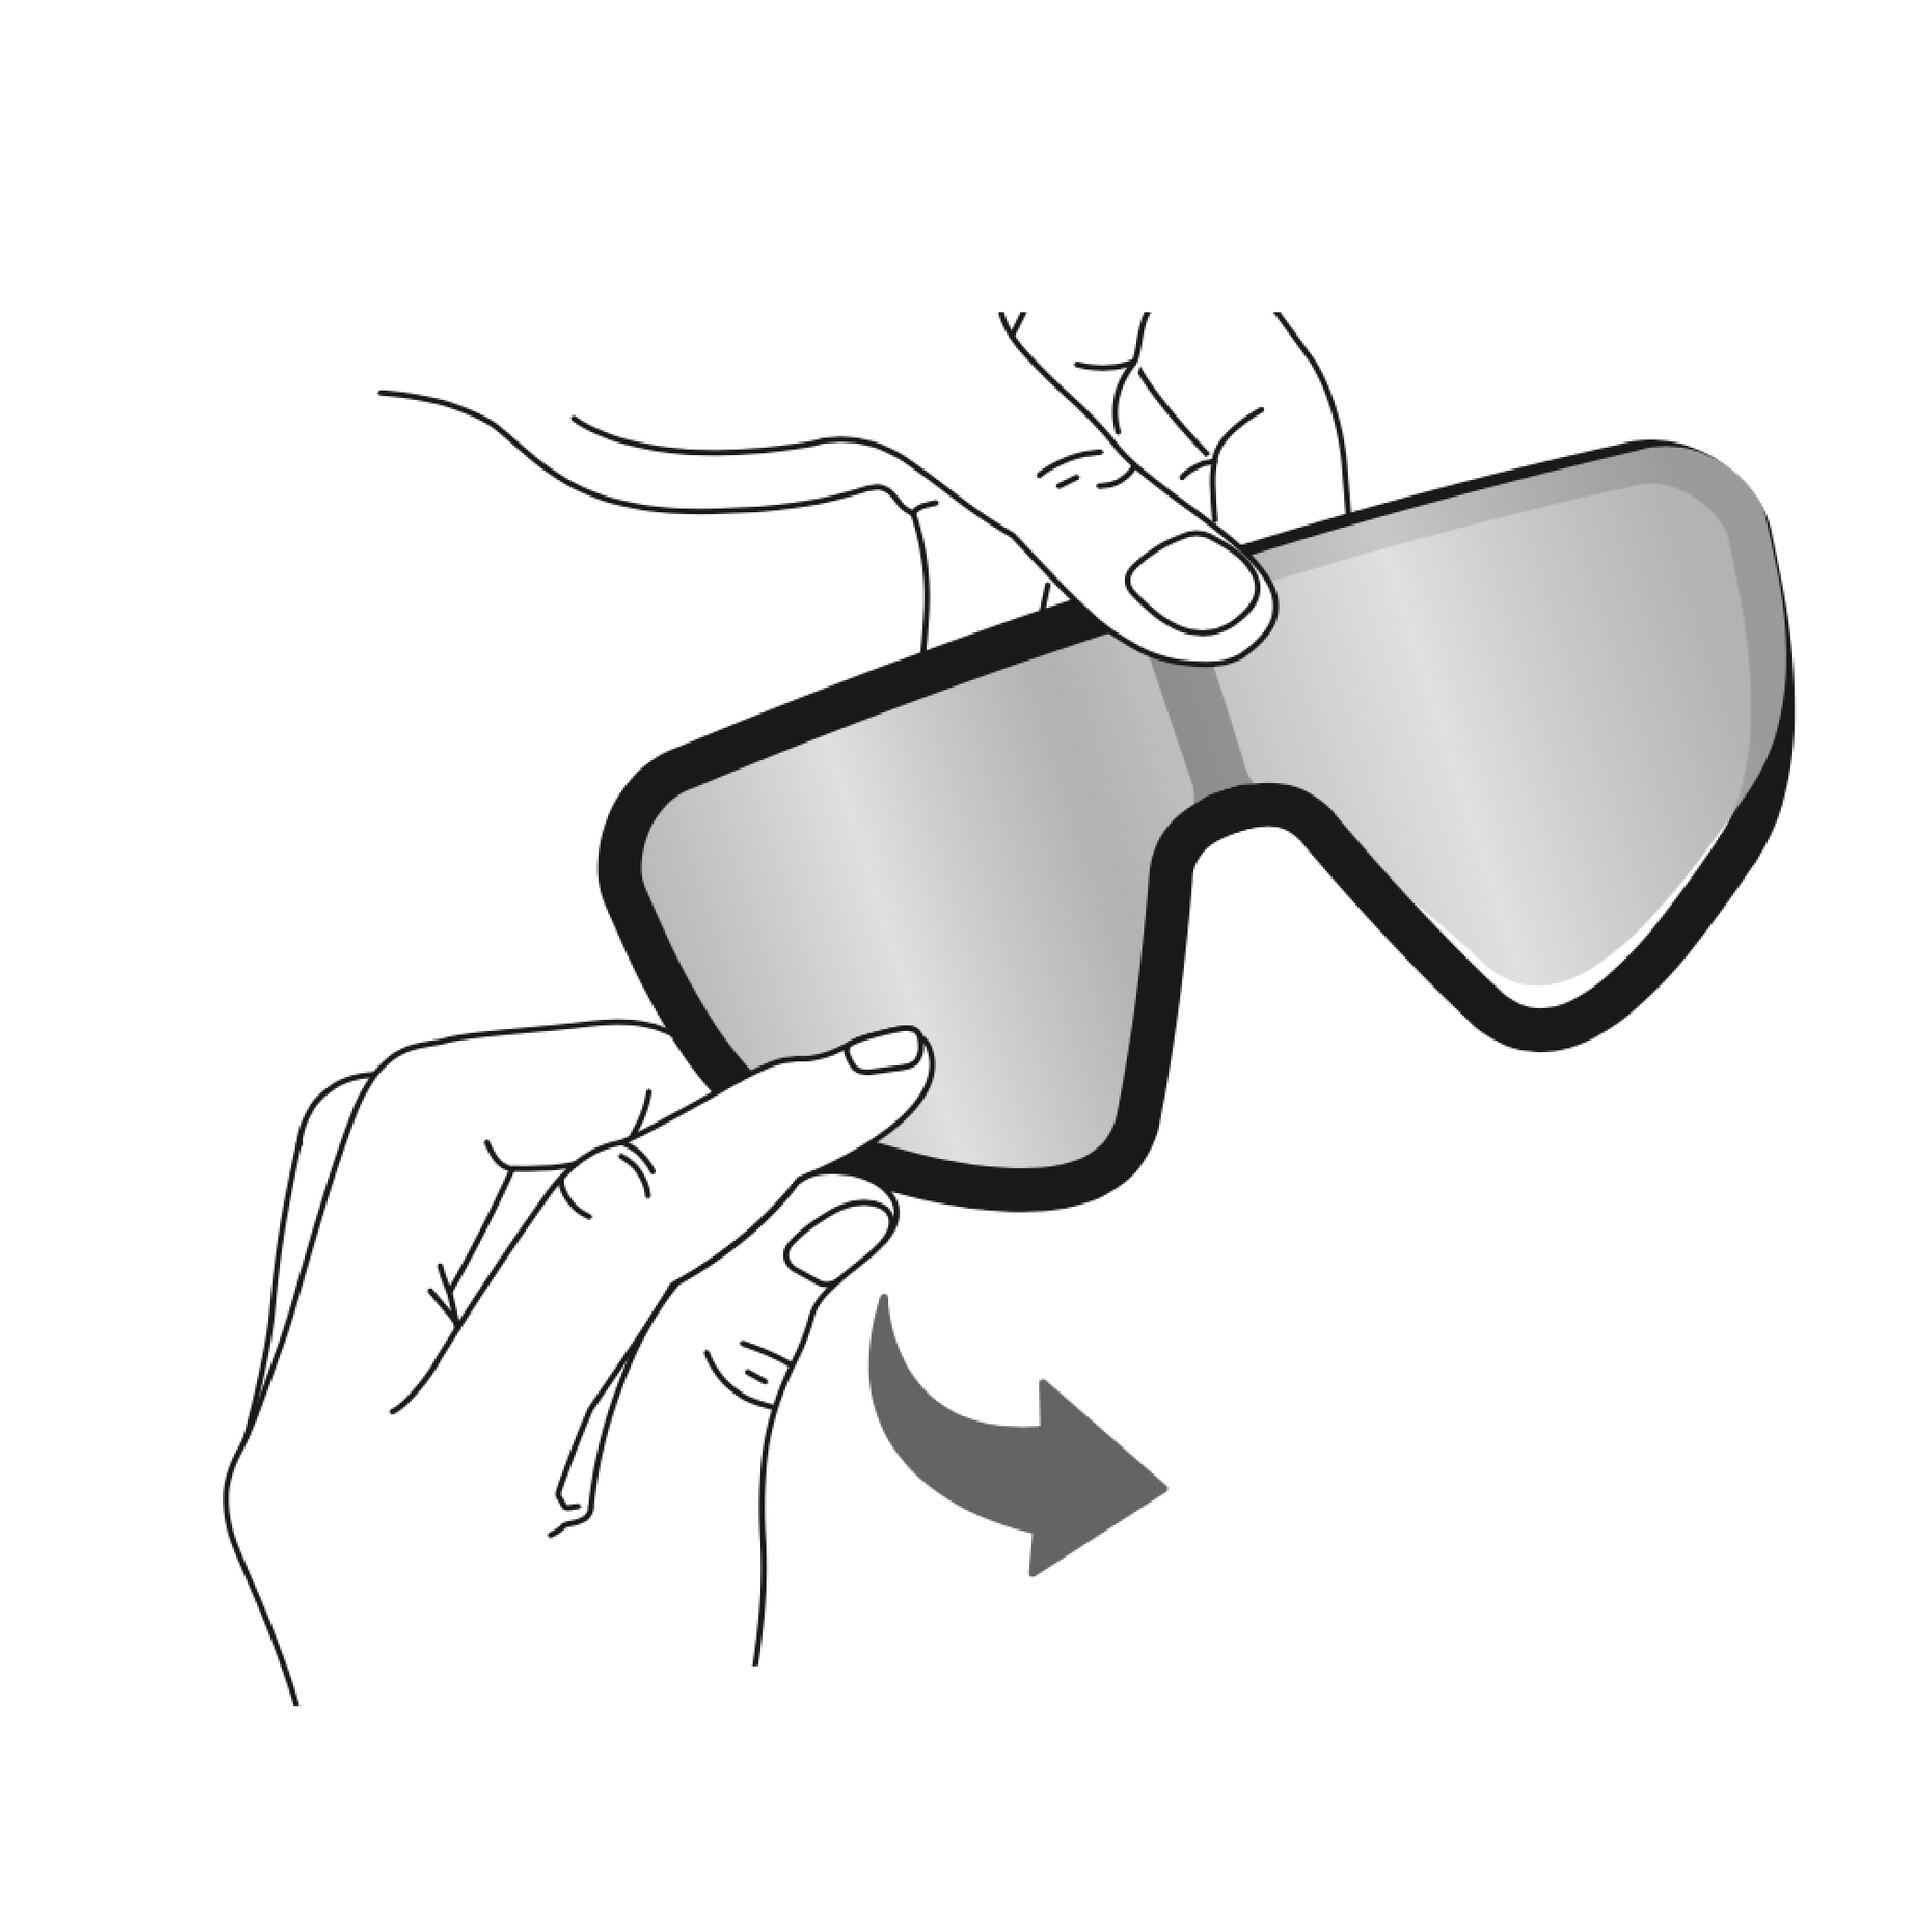 Comment changer les verres des lunettes PERF 900 VAN RYSEL ?  : notice, réparation